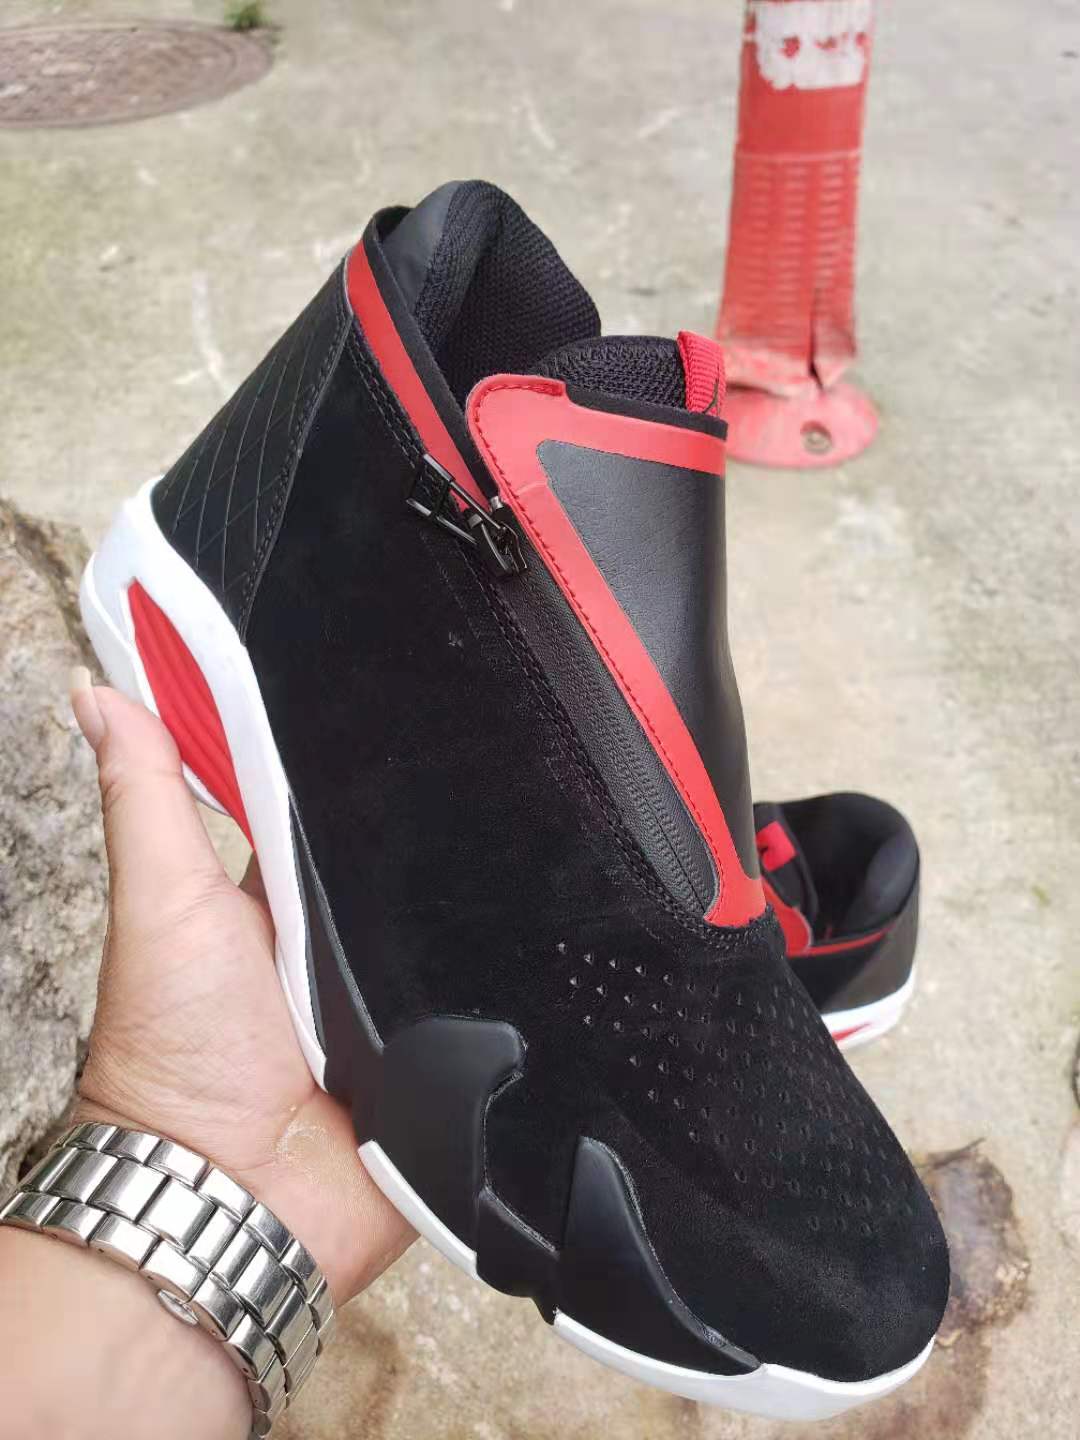 Cheap 2019 Air Jordan Retro 14 Sneakers For Men in 208301, cheap Jordan14, only $65!